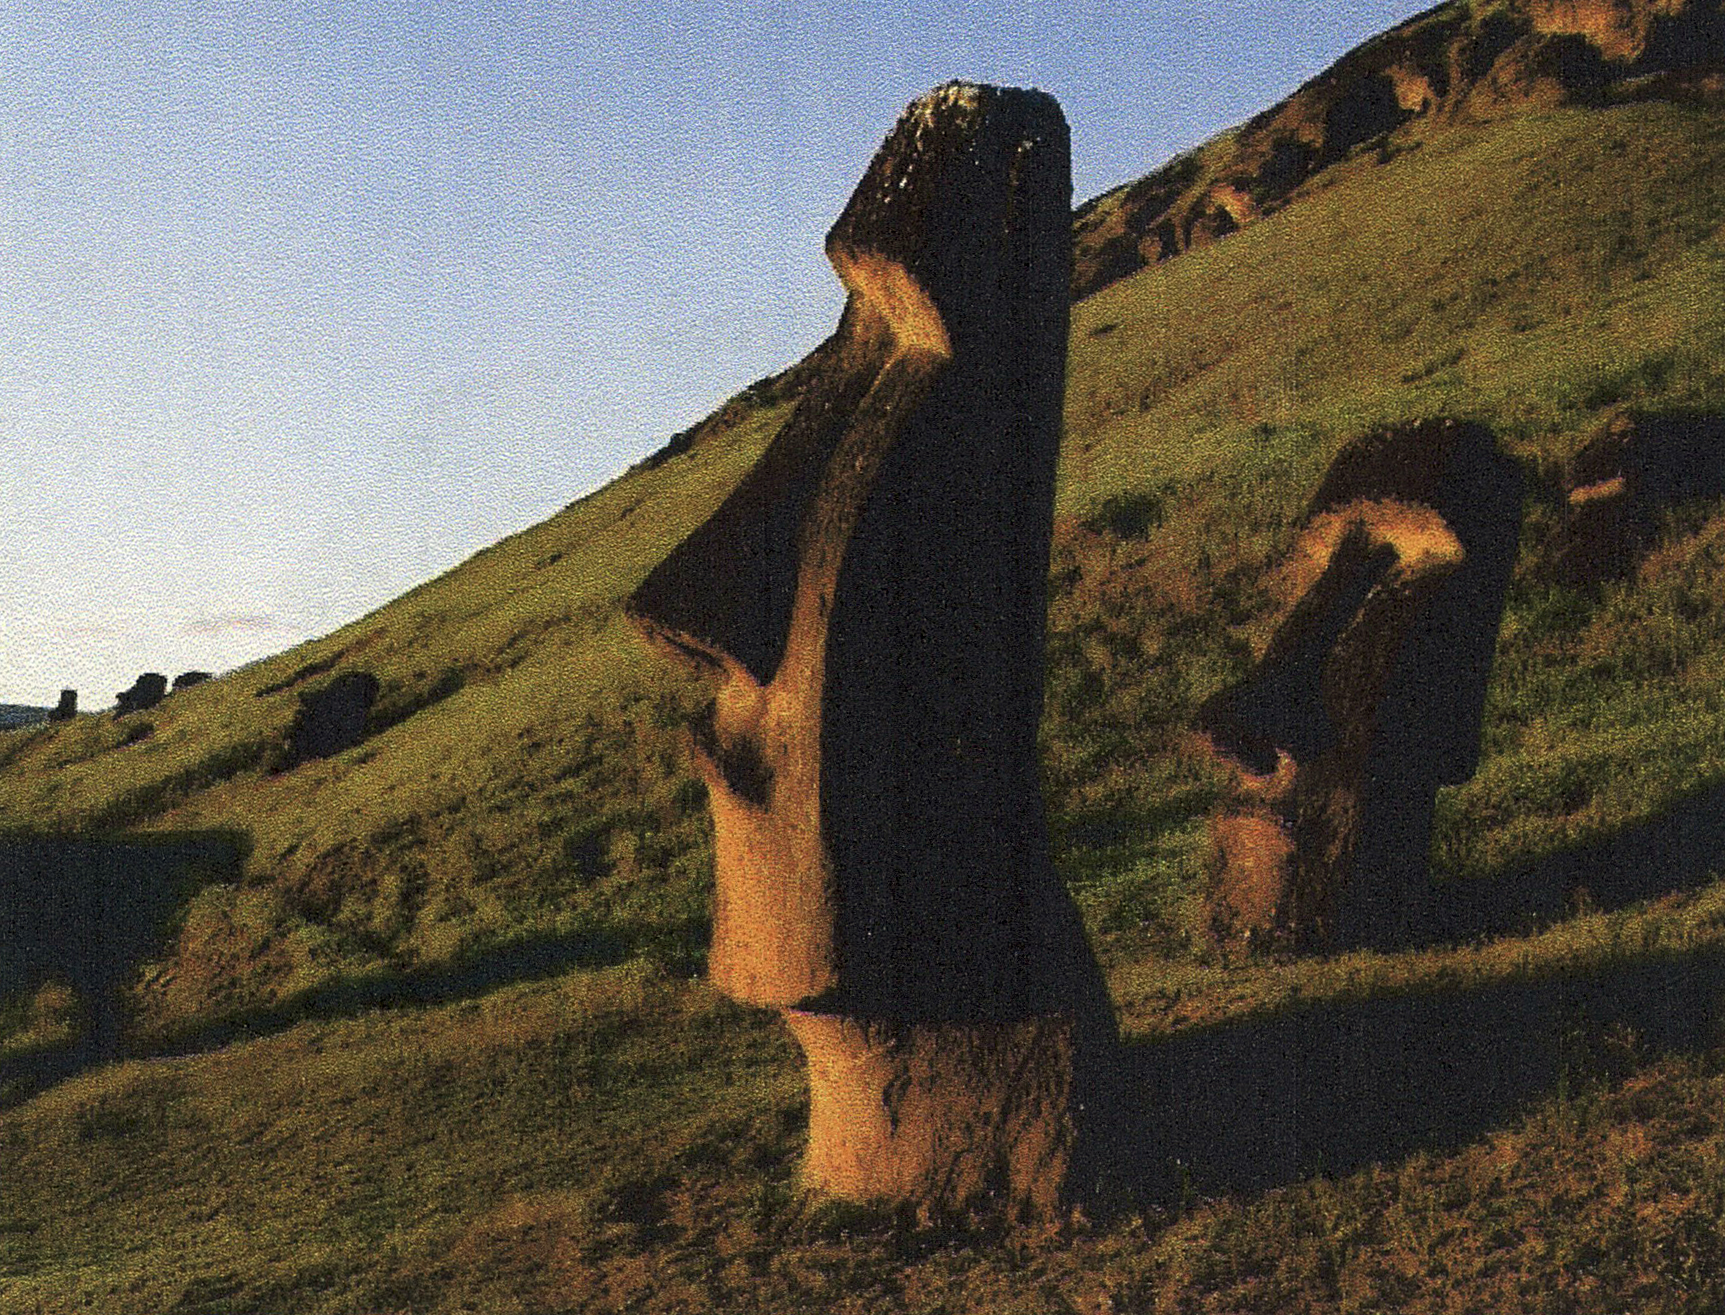 Каменные статуи острова пасхи страна